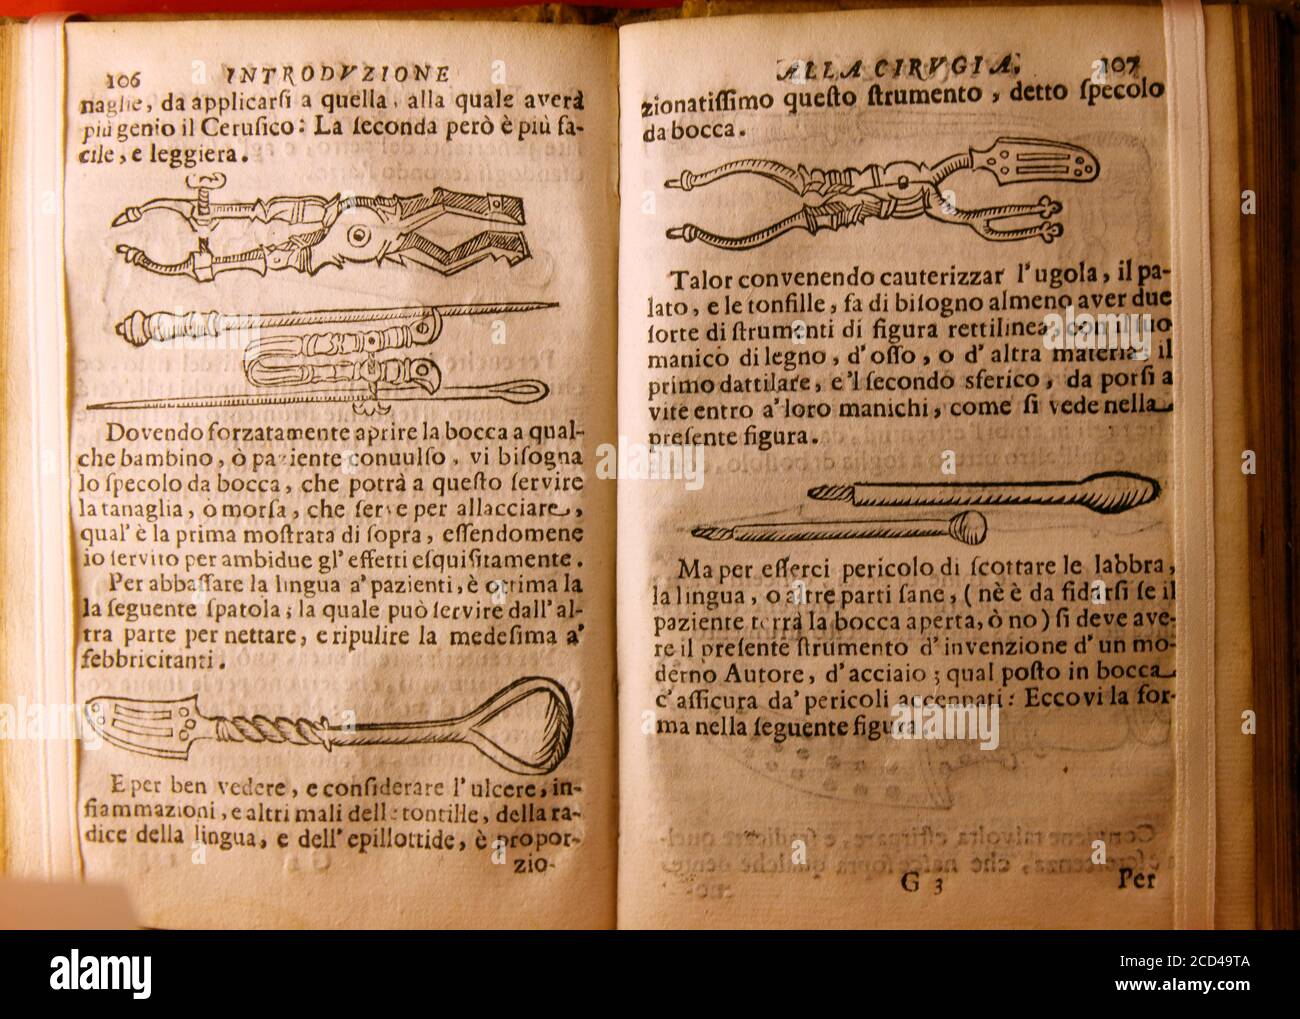 Italy Tuscany Camaldoli Ancient Pharmacy Ancient Medical And Galenic Texts Stock Photo Alamy